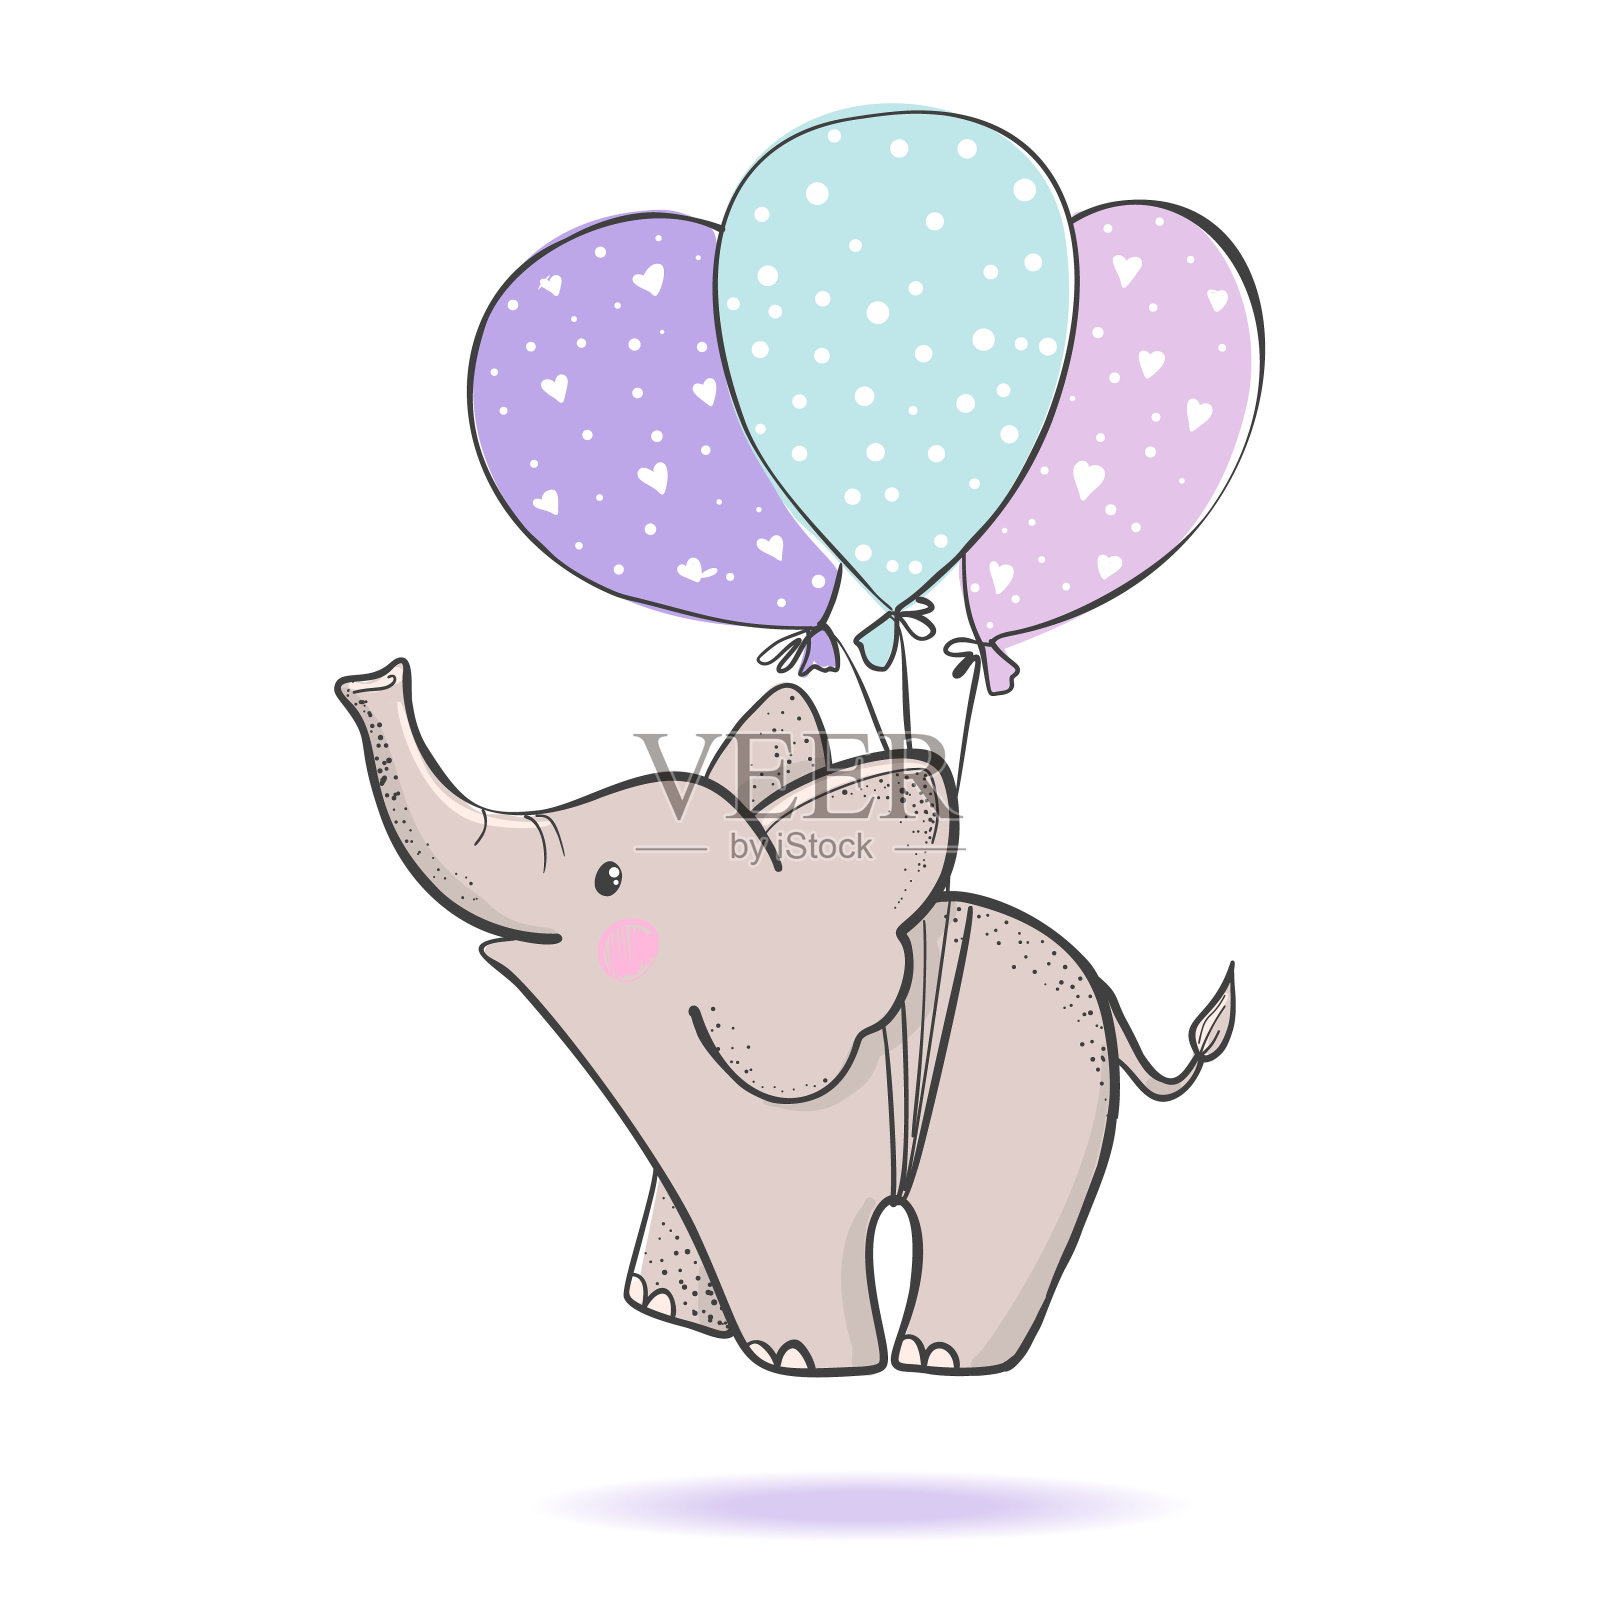 可爱的手画大象在气球上飞行。插画图片素材